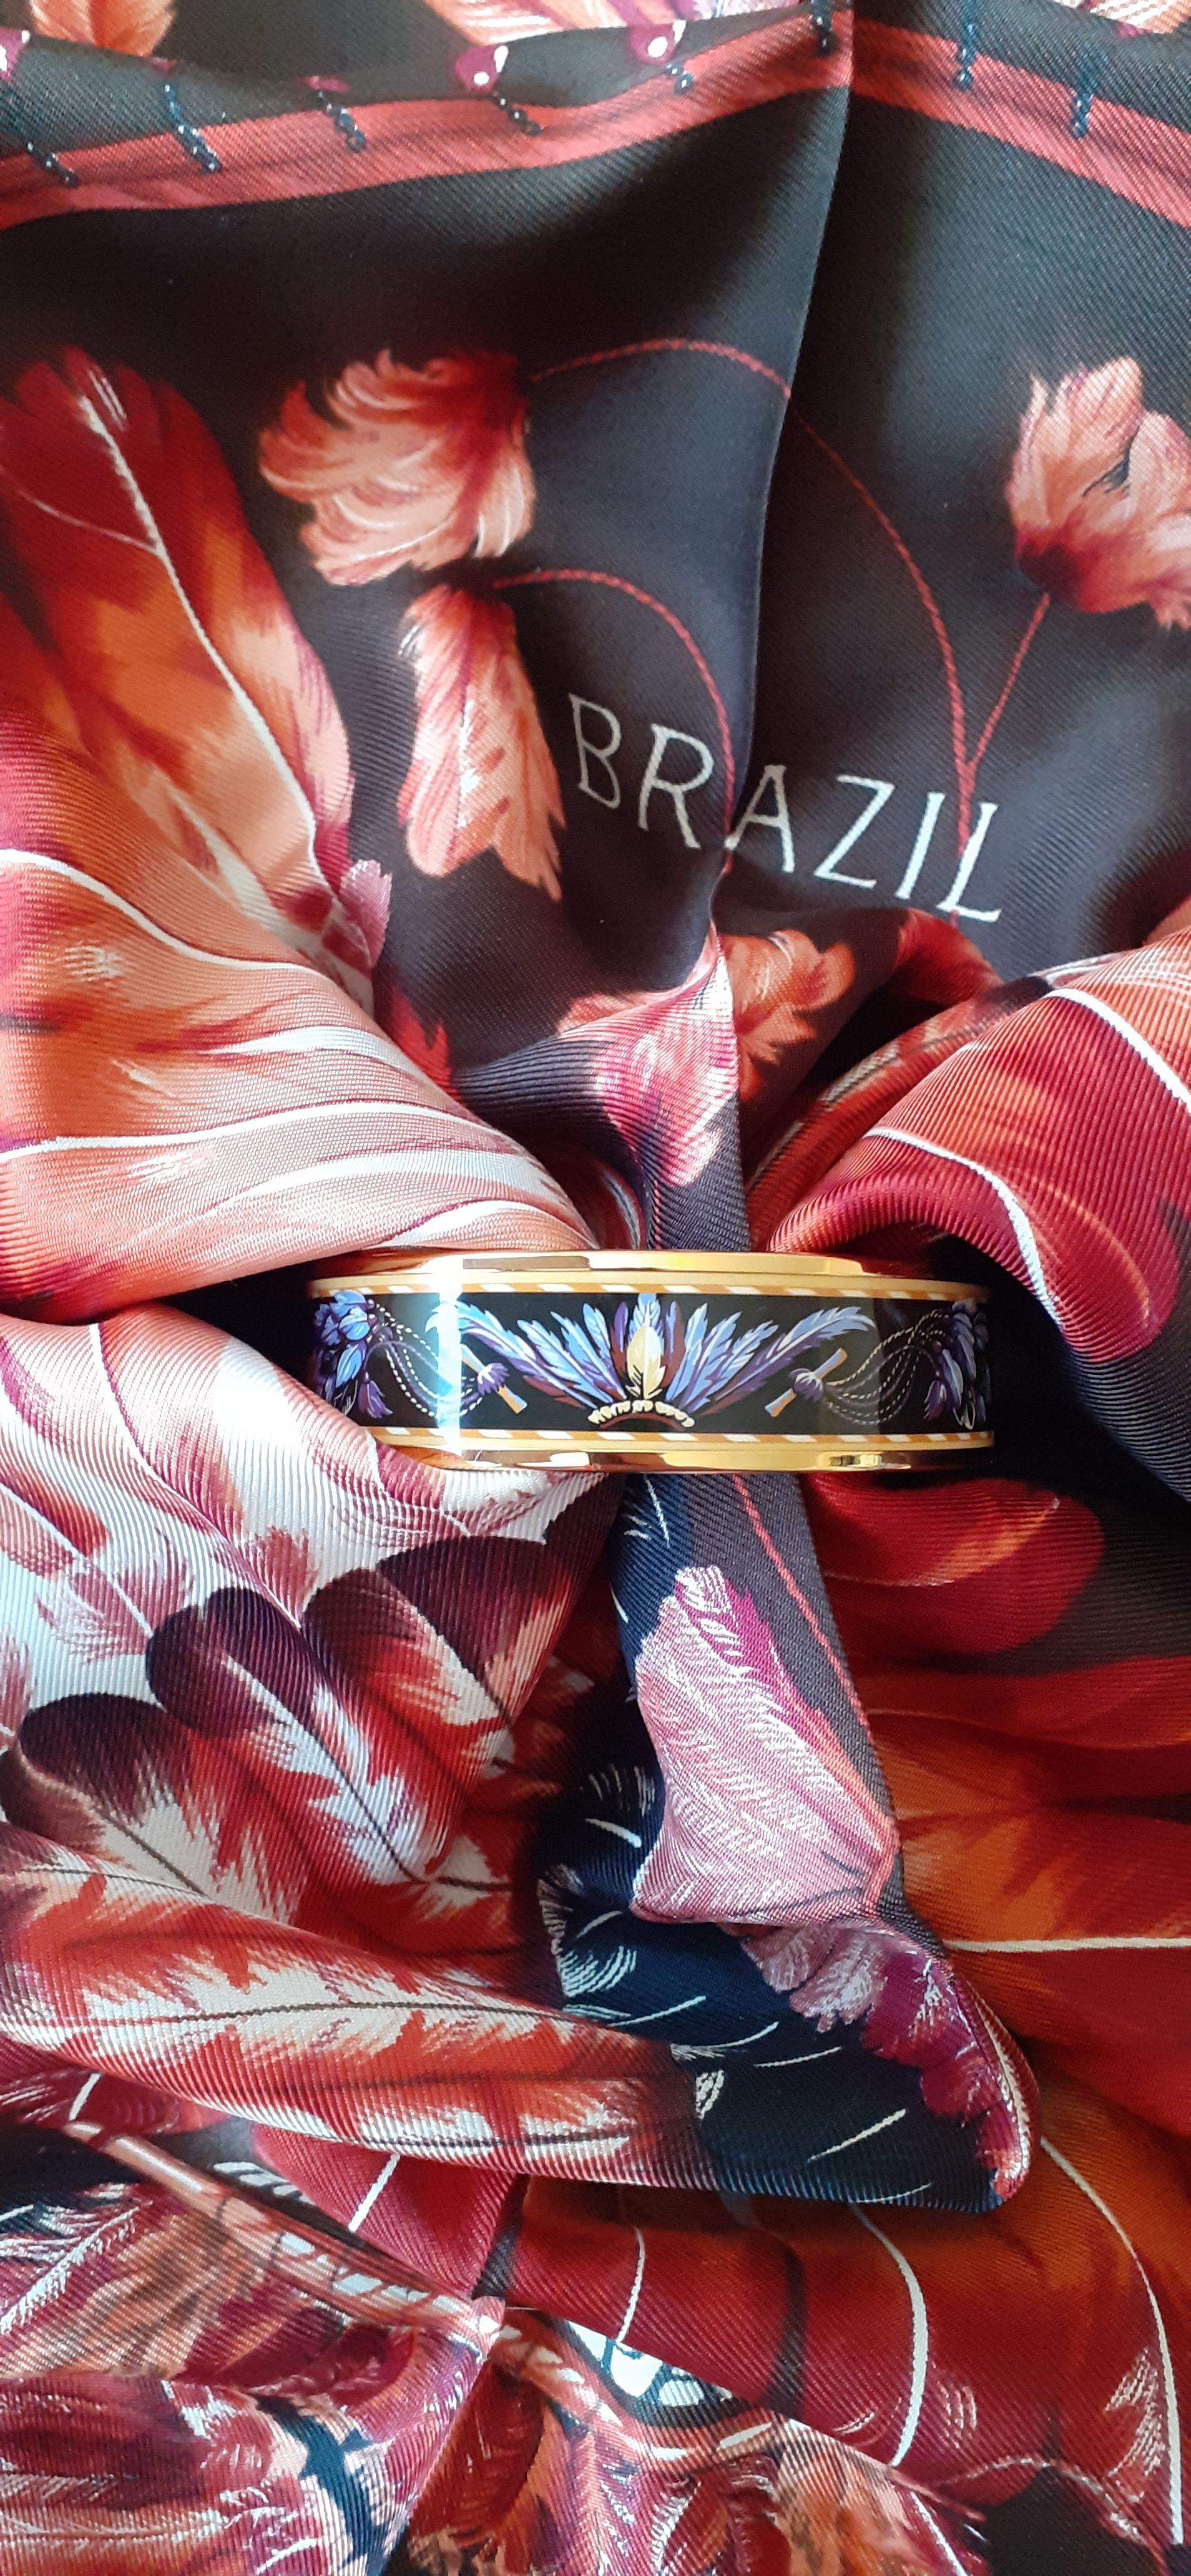 Superbe et magnifique bracelet Hermès authentique.

Imprimer : 